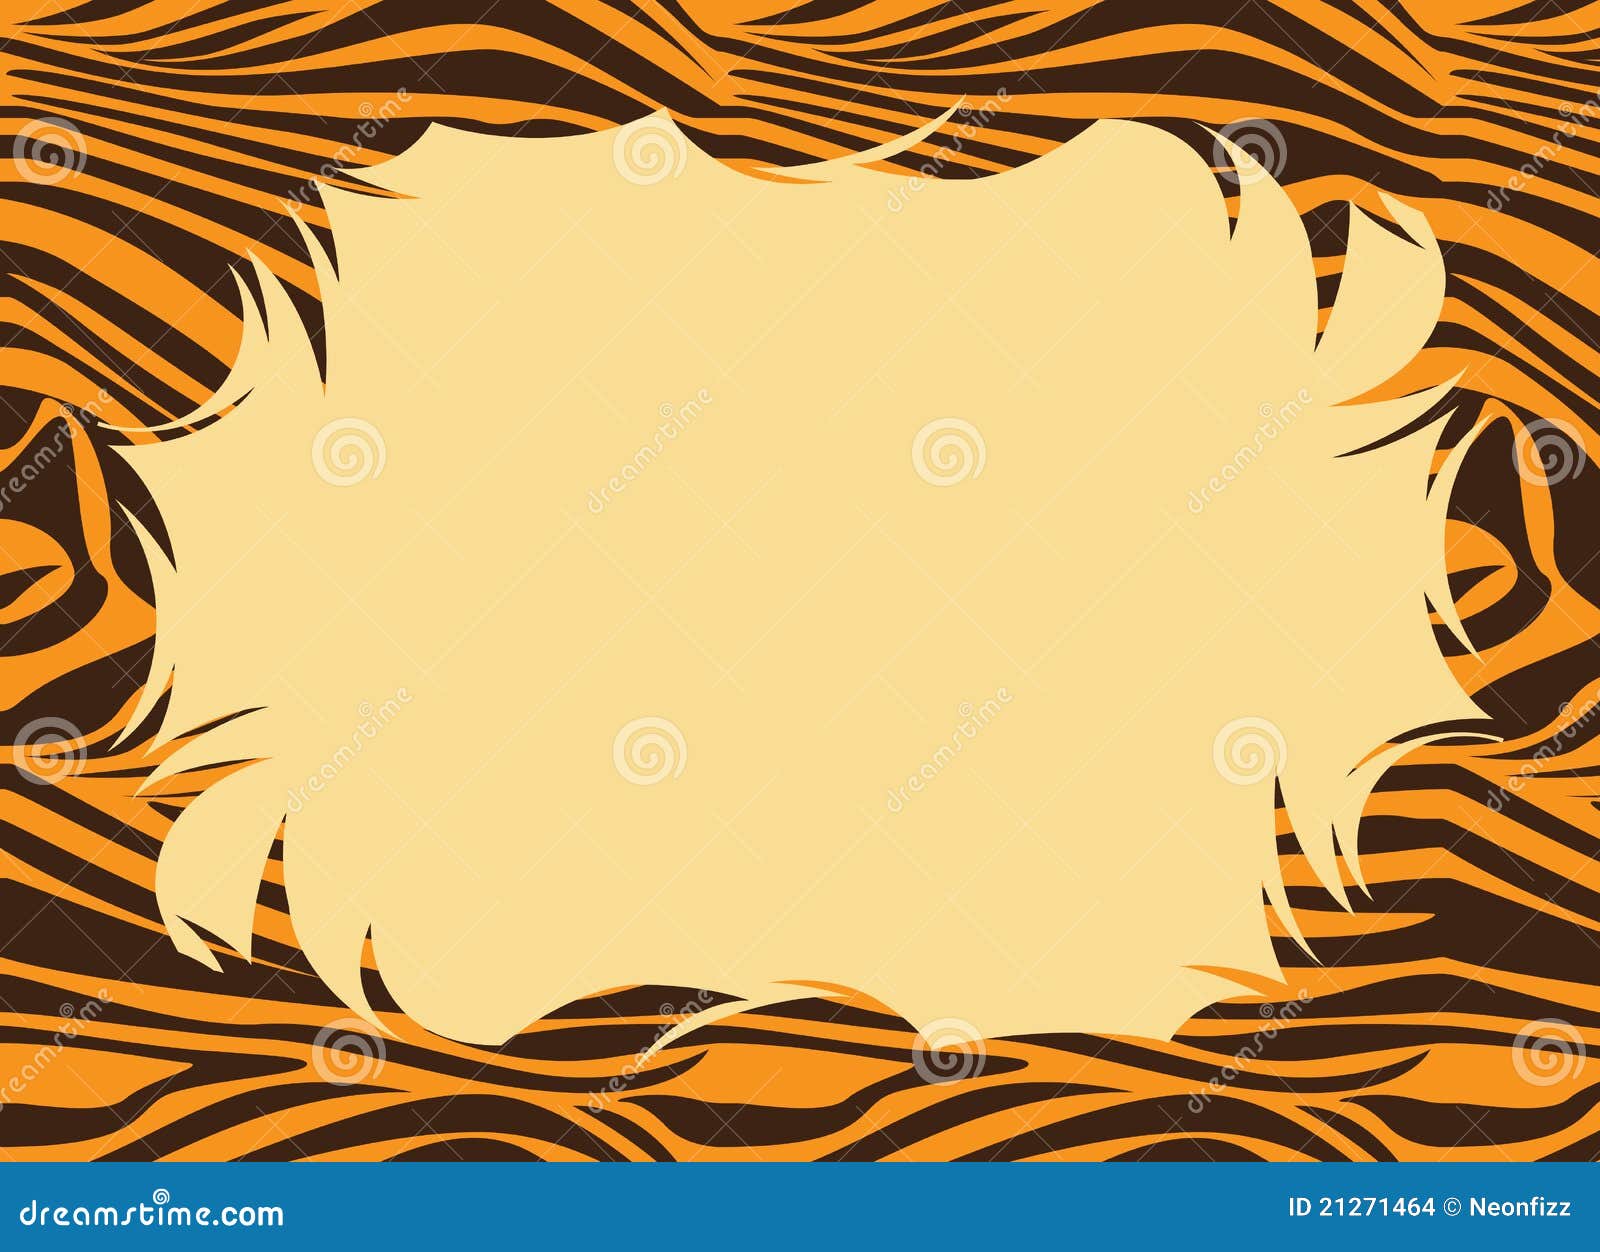 tiger print clip art - photo #21